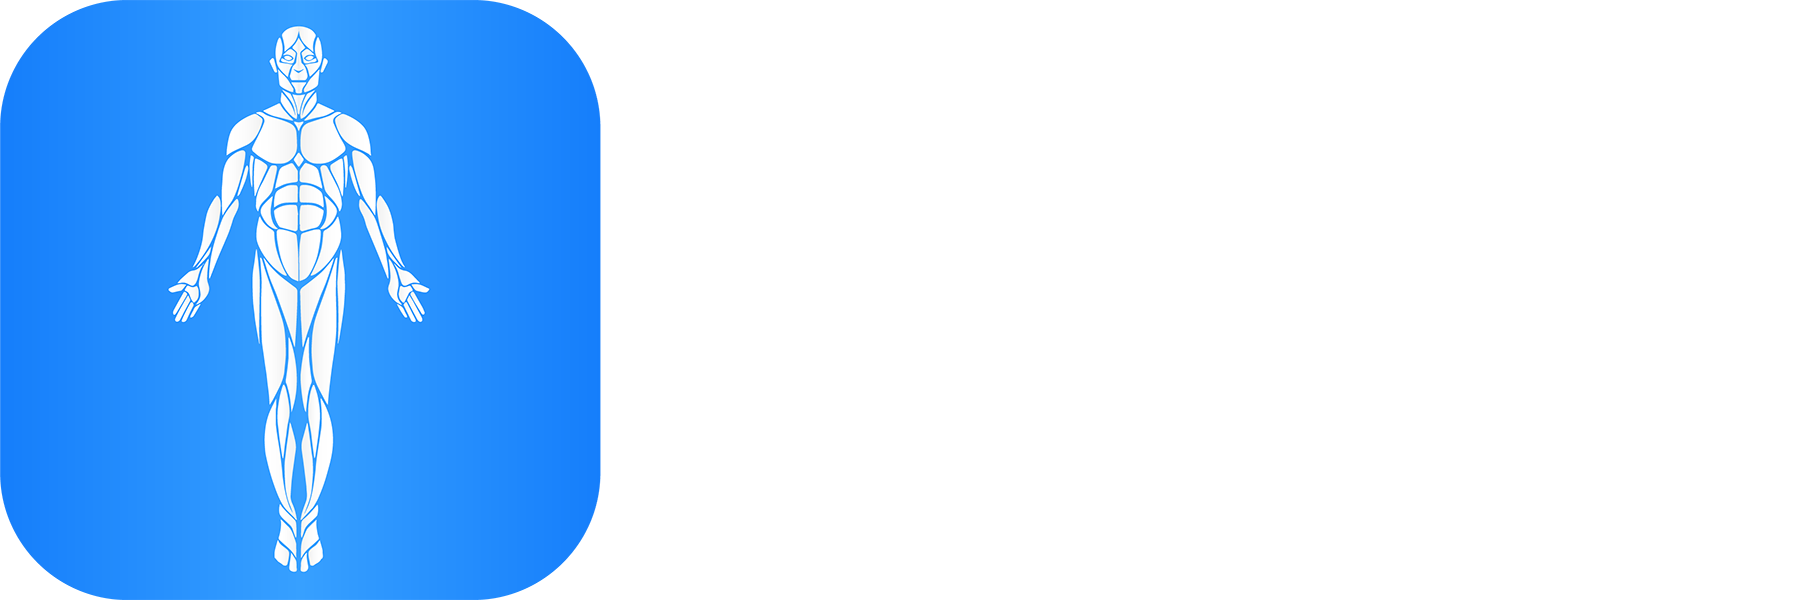 The Longevity Index